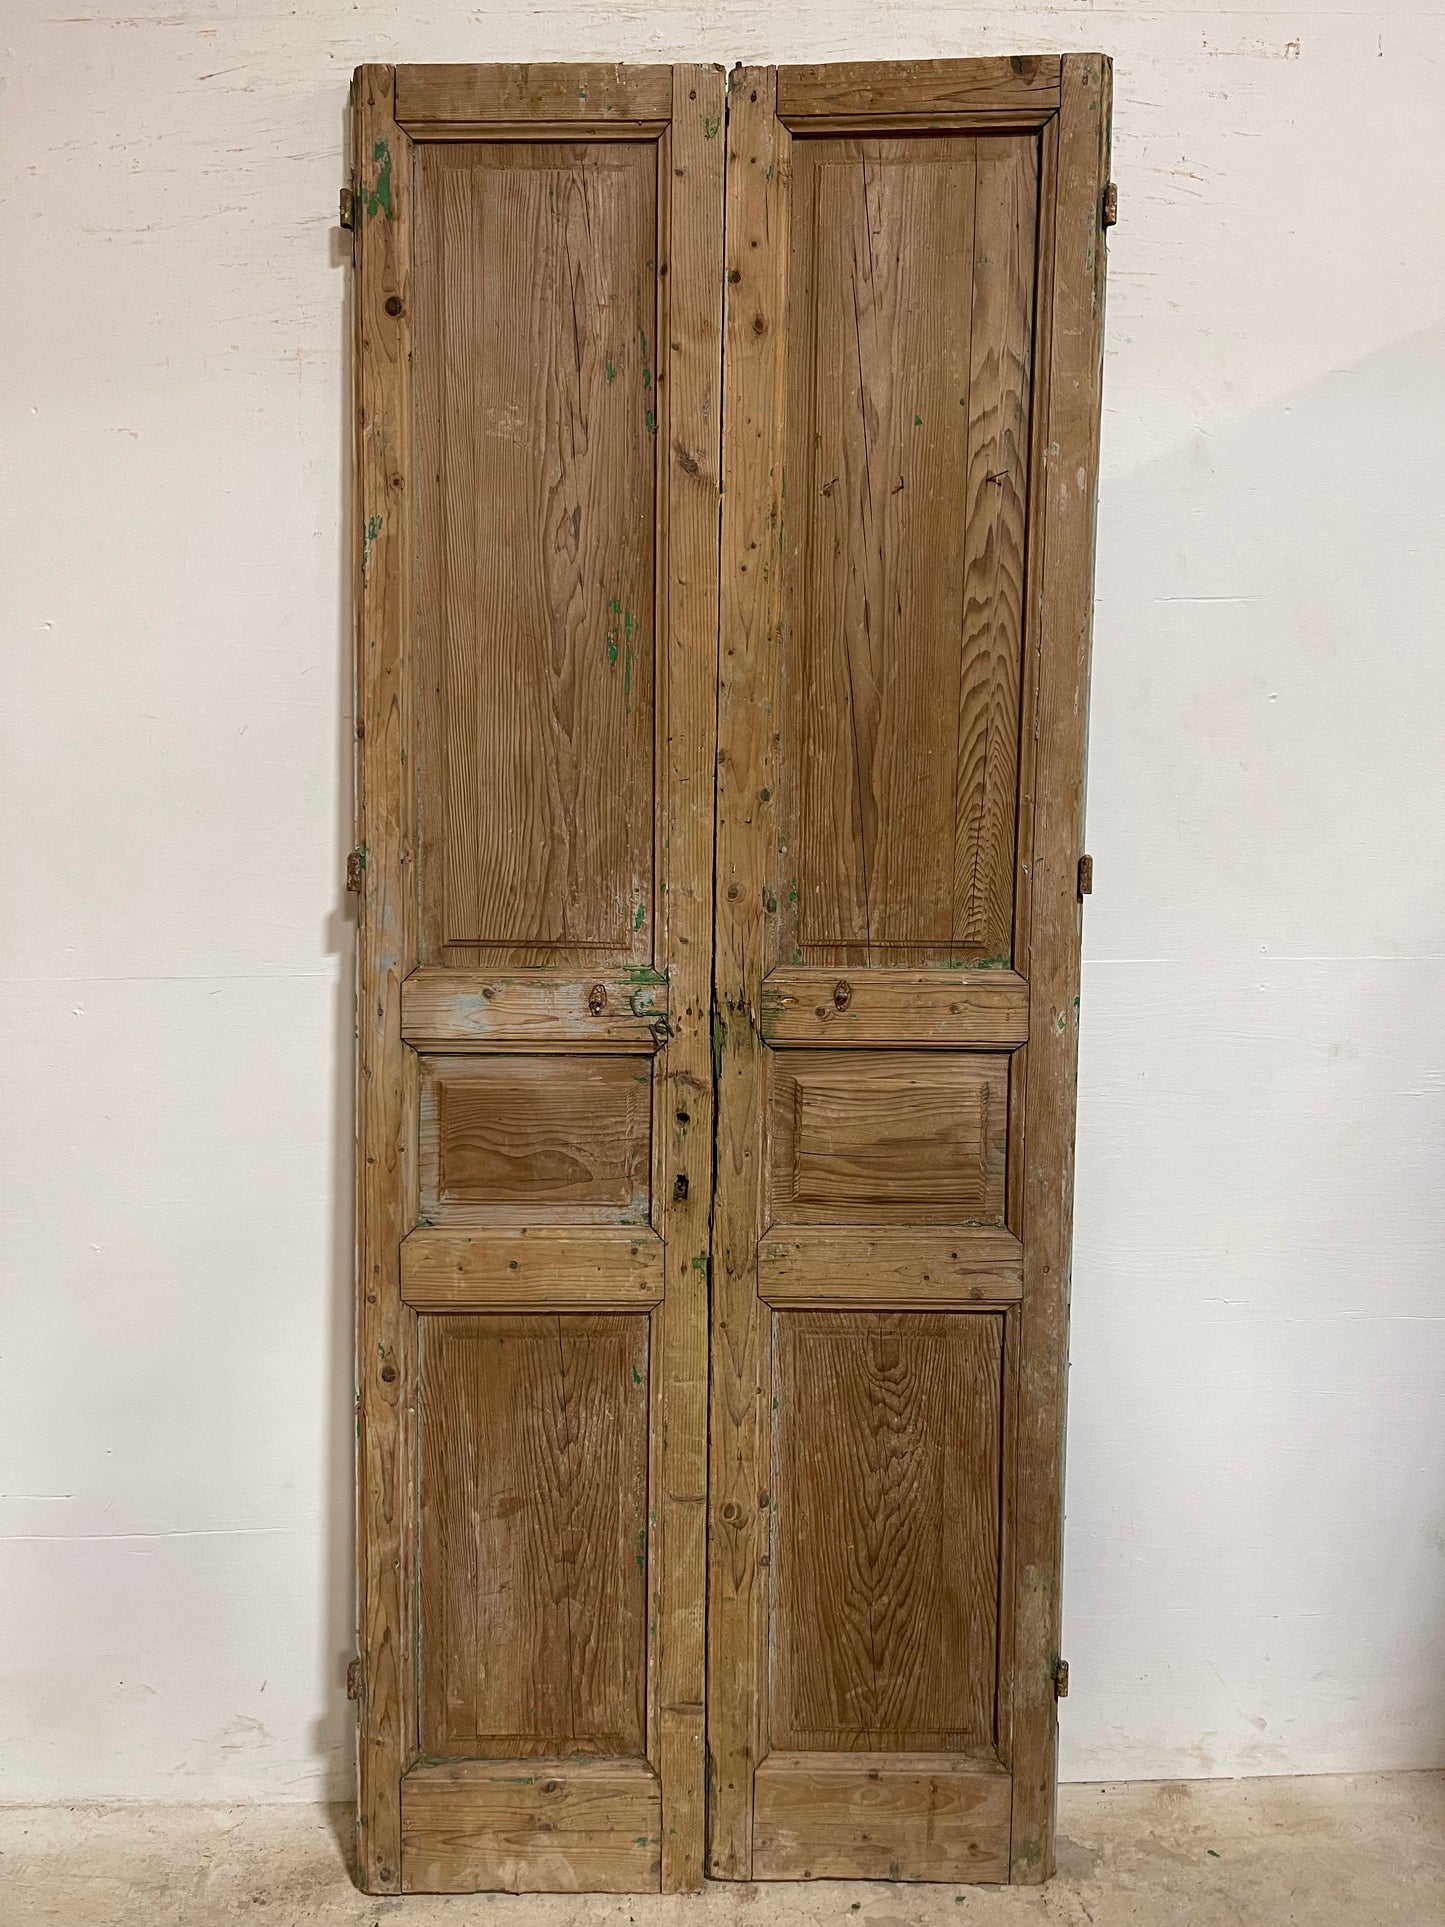 Antique French panel Doors (92.5x36.75) J645